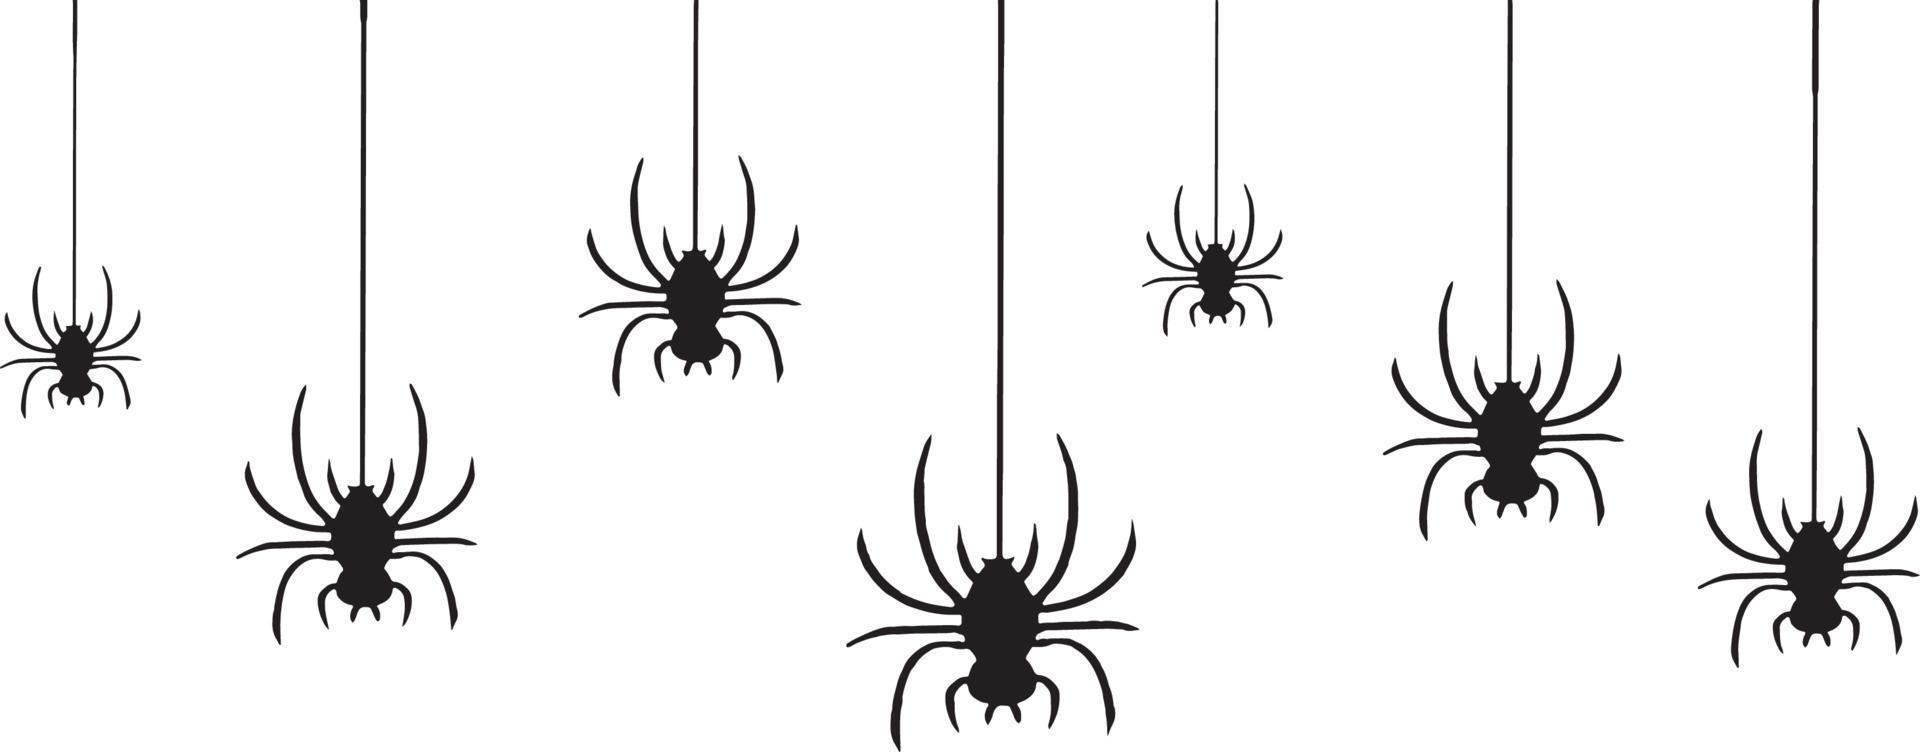 ragni di halloween che cadono con uno sfondo bianco vettore